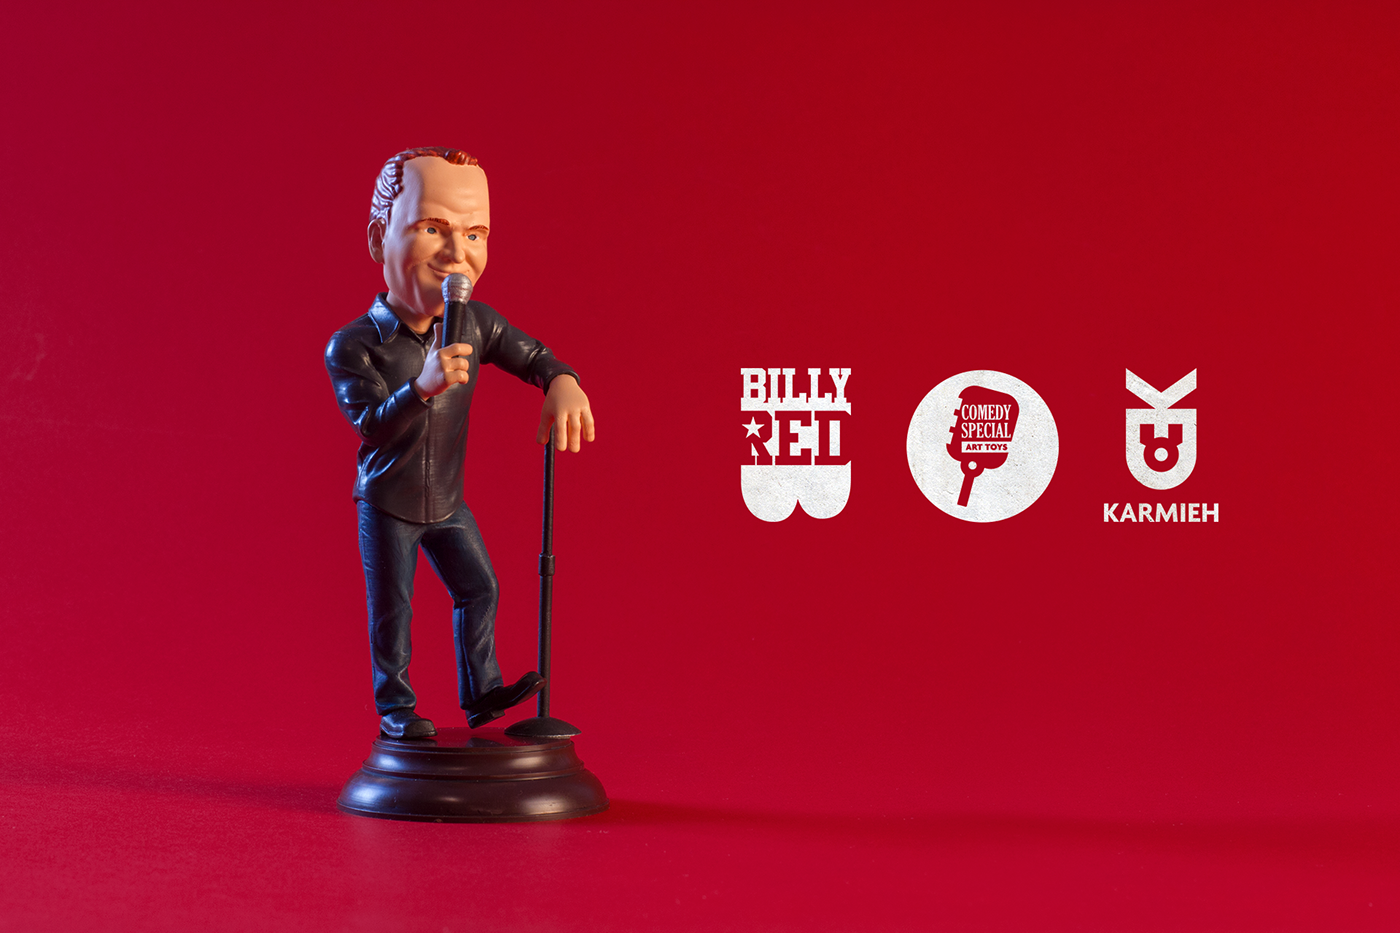 Bill Burr toy design  toy maker toy designer 3d printing 3d printed toy bill burr toy stand up comedy